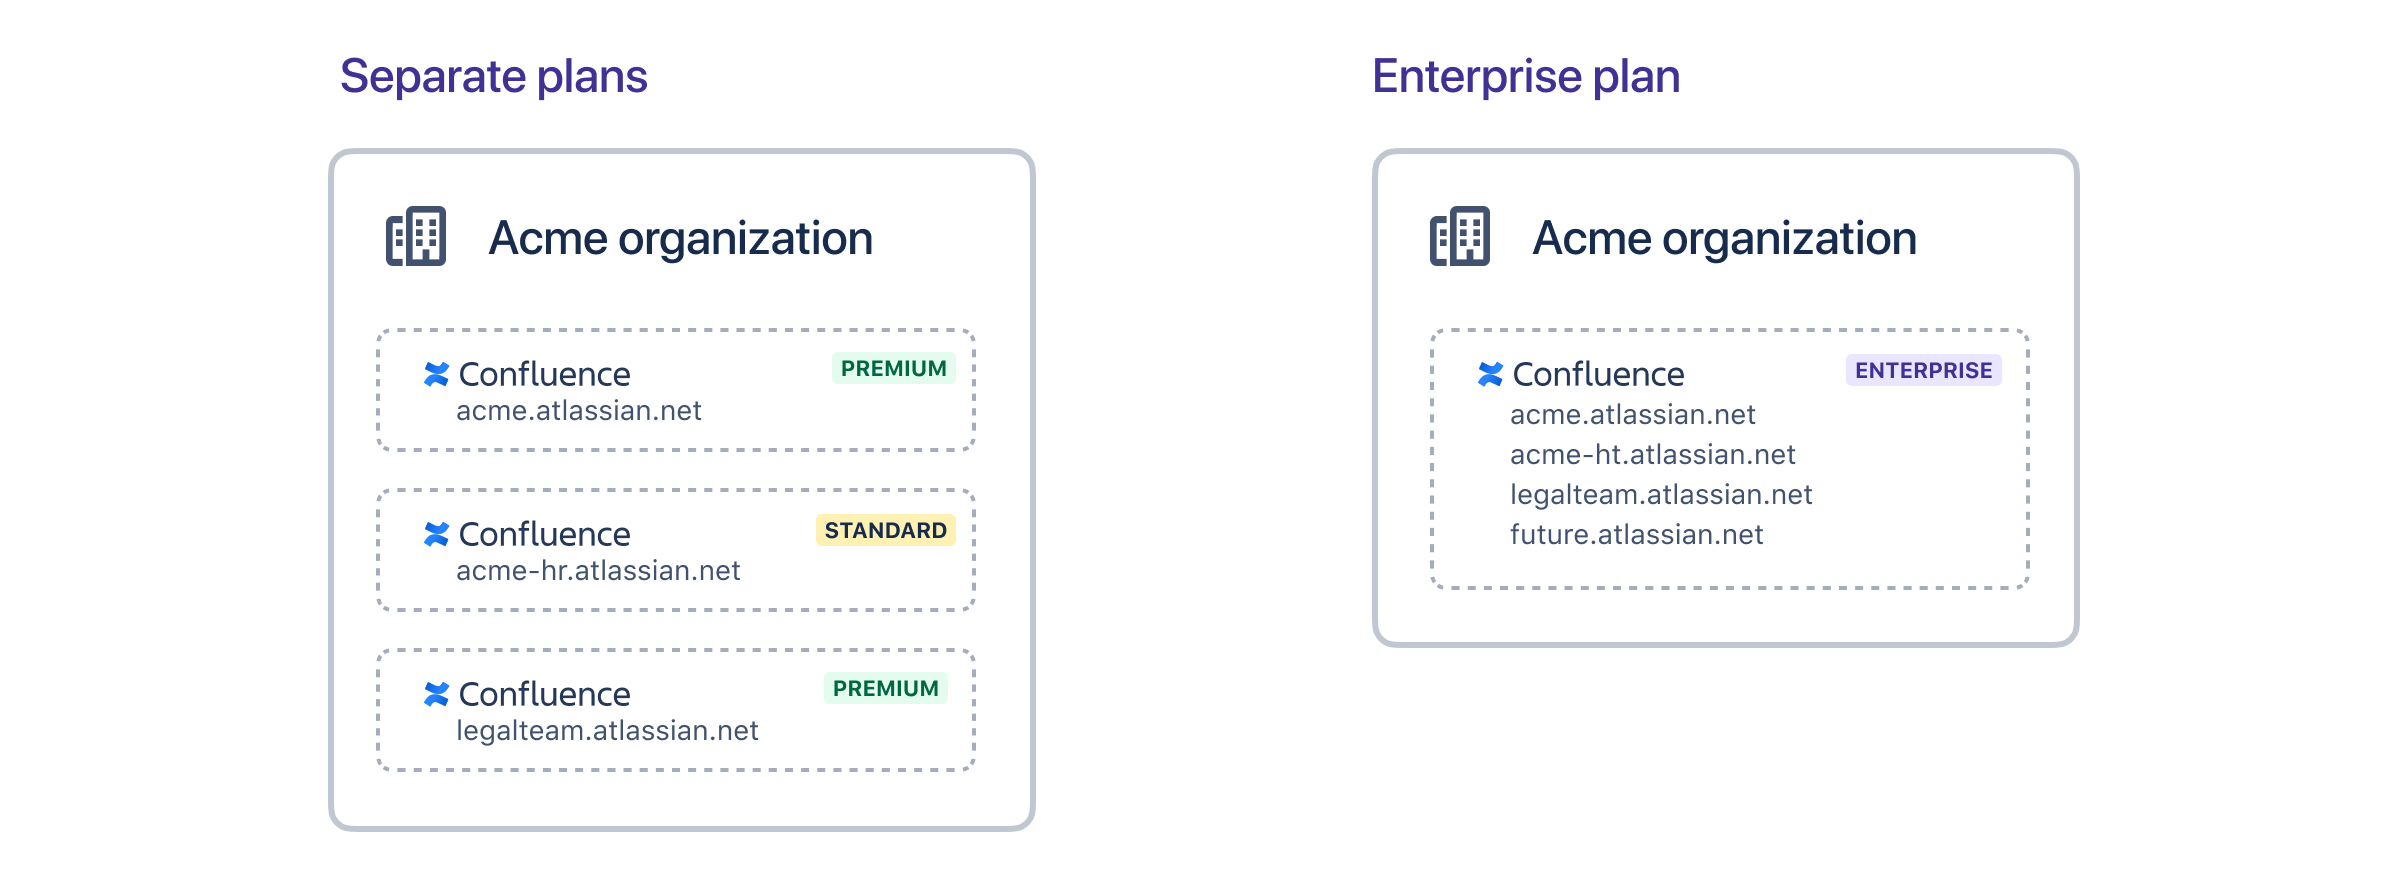 Standard プランと Premium プランを持つ組織と、Enterprise プランを持つ組織を示す図